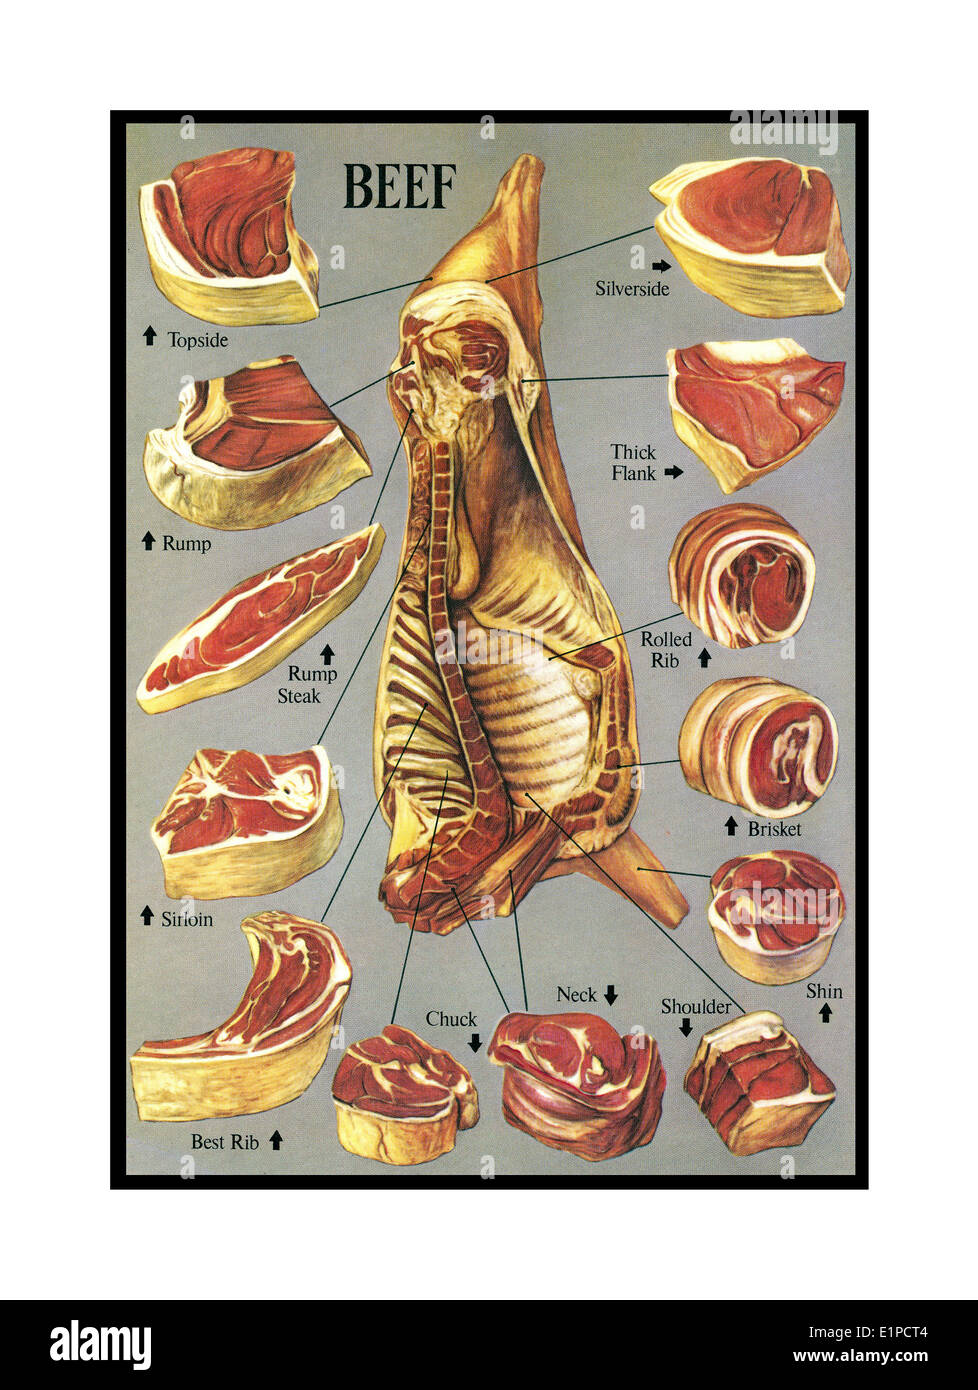 RINDFLEISCHSCHNITT-FUGEN ILLUSTRATION Kochwaren Buch Fleisch Illustration einer umfassenden Vielfalt von Rindfleisch-Fleischerschnitten und -Fugen Stockfoto